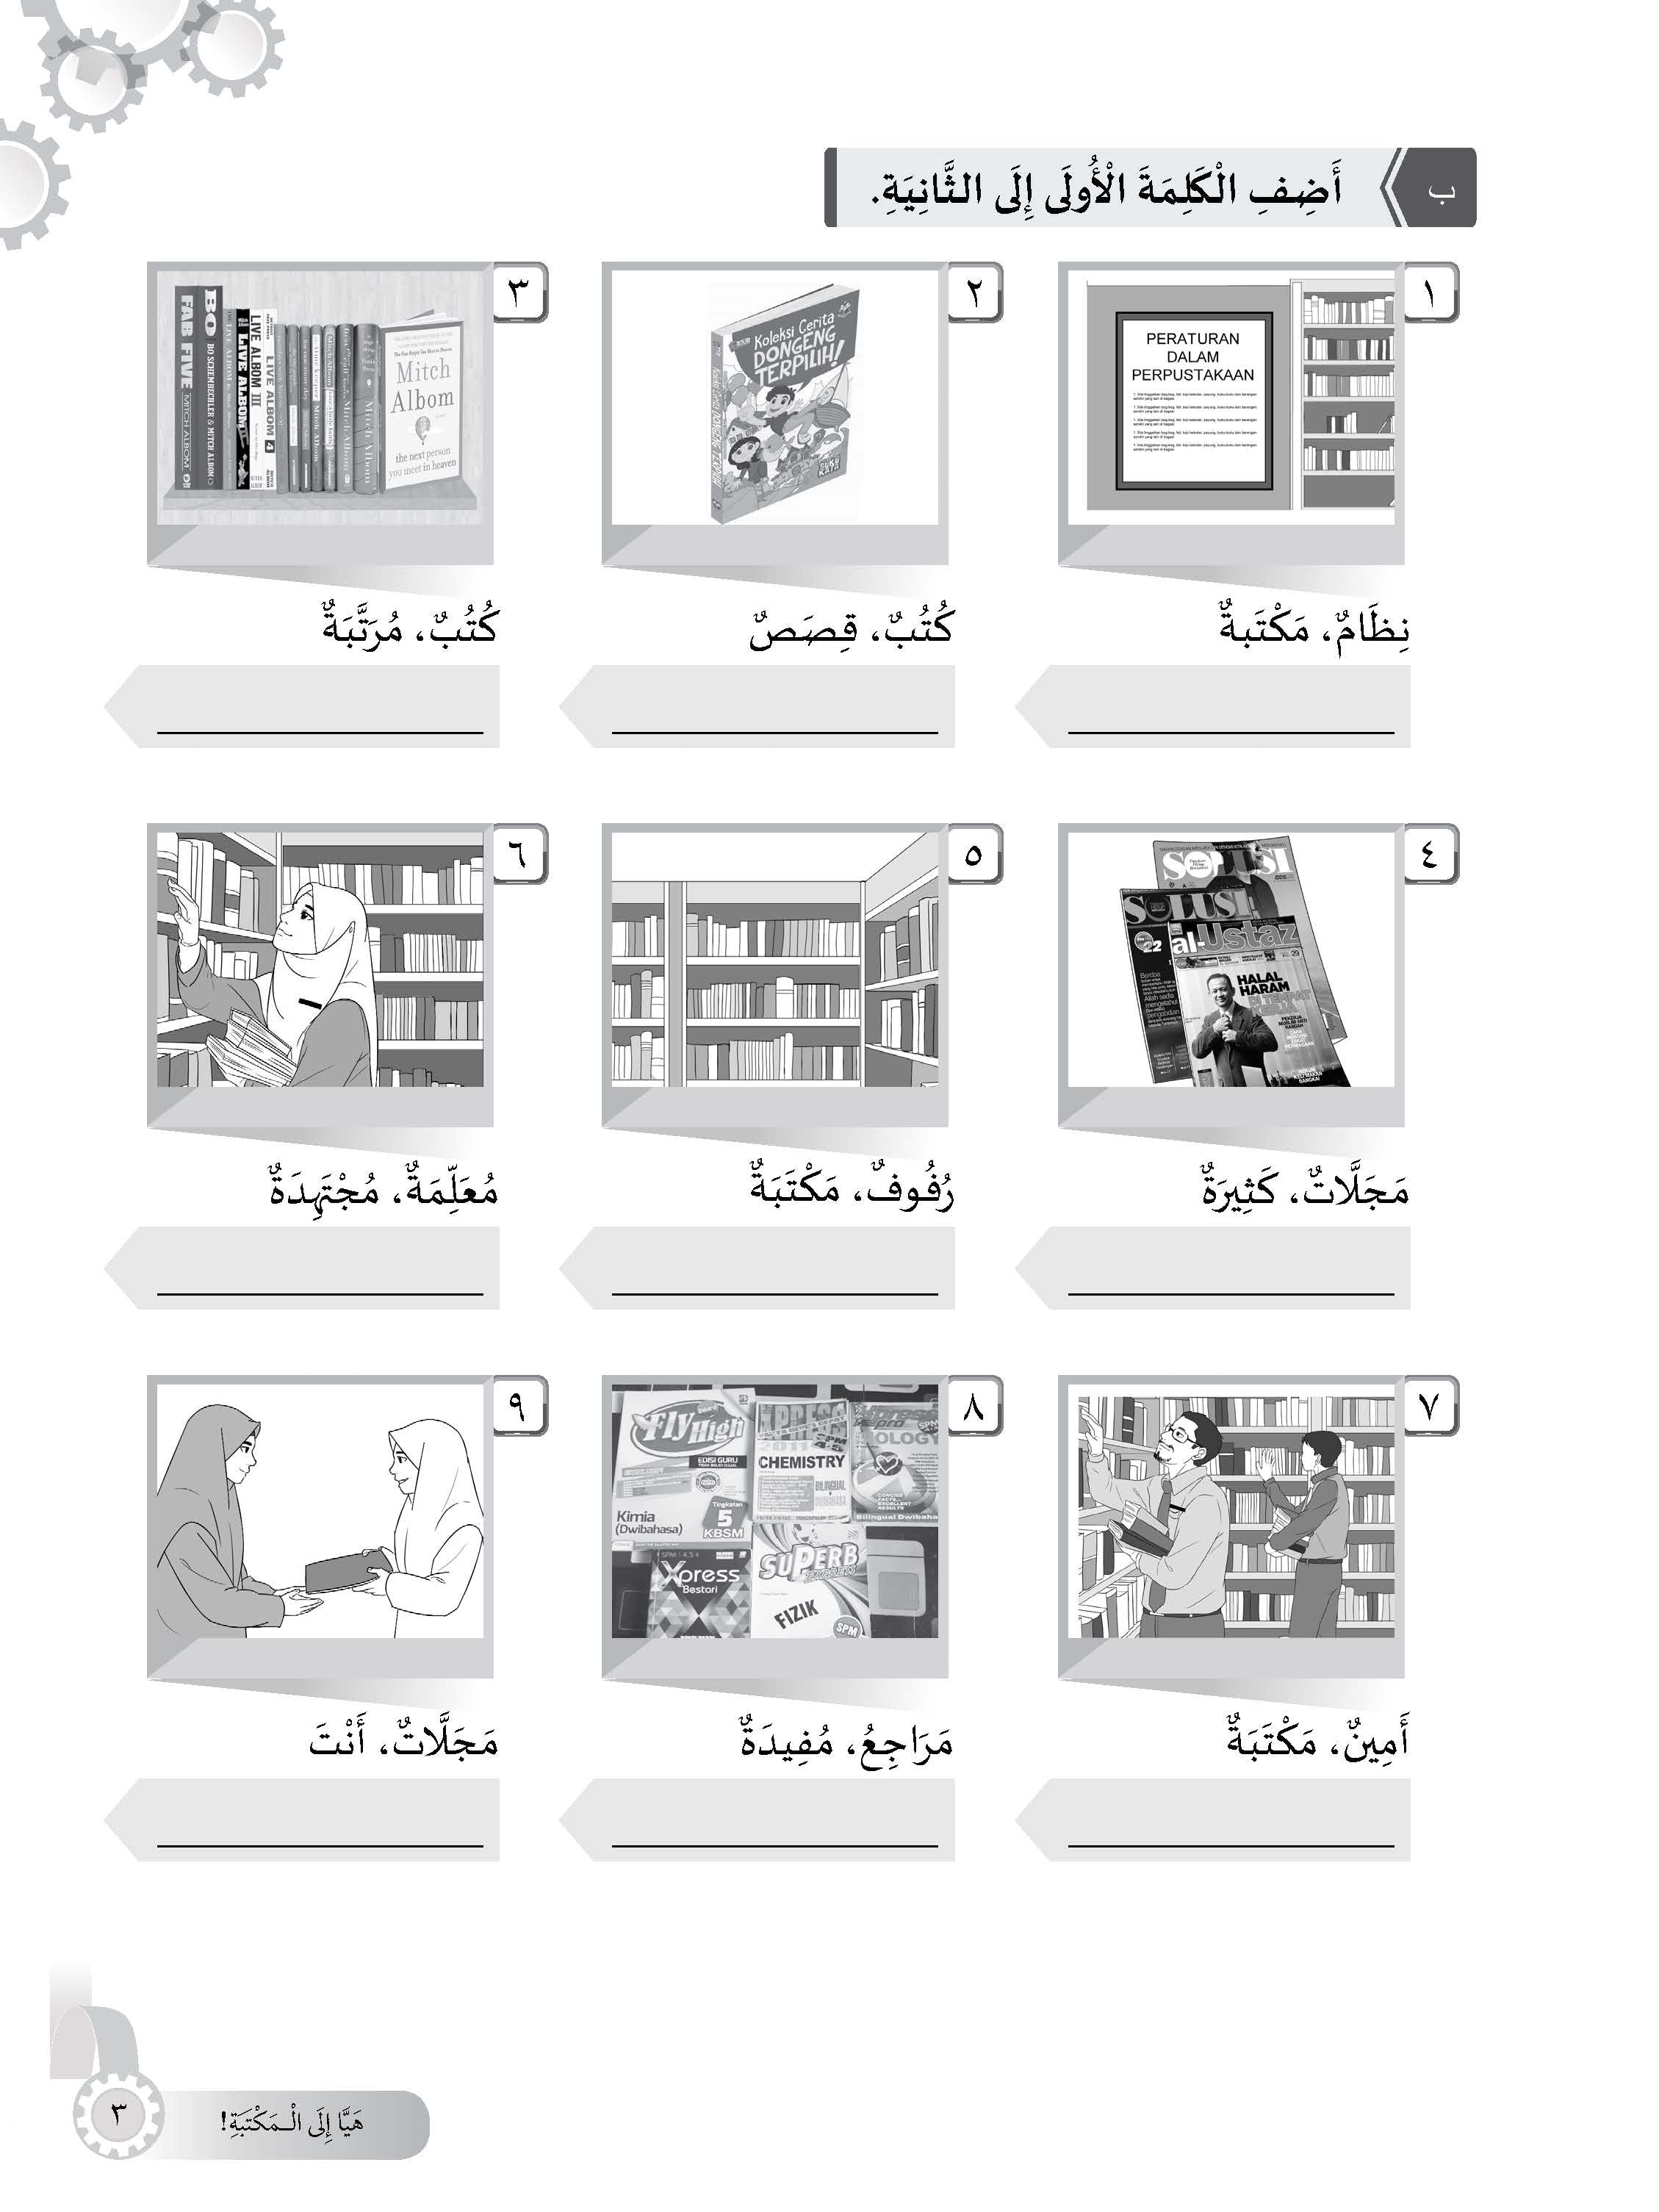 High Score Latihan Topikal Bahasa Arab Tingkatan 2 - (TBBS1121)